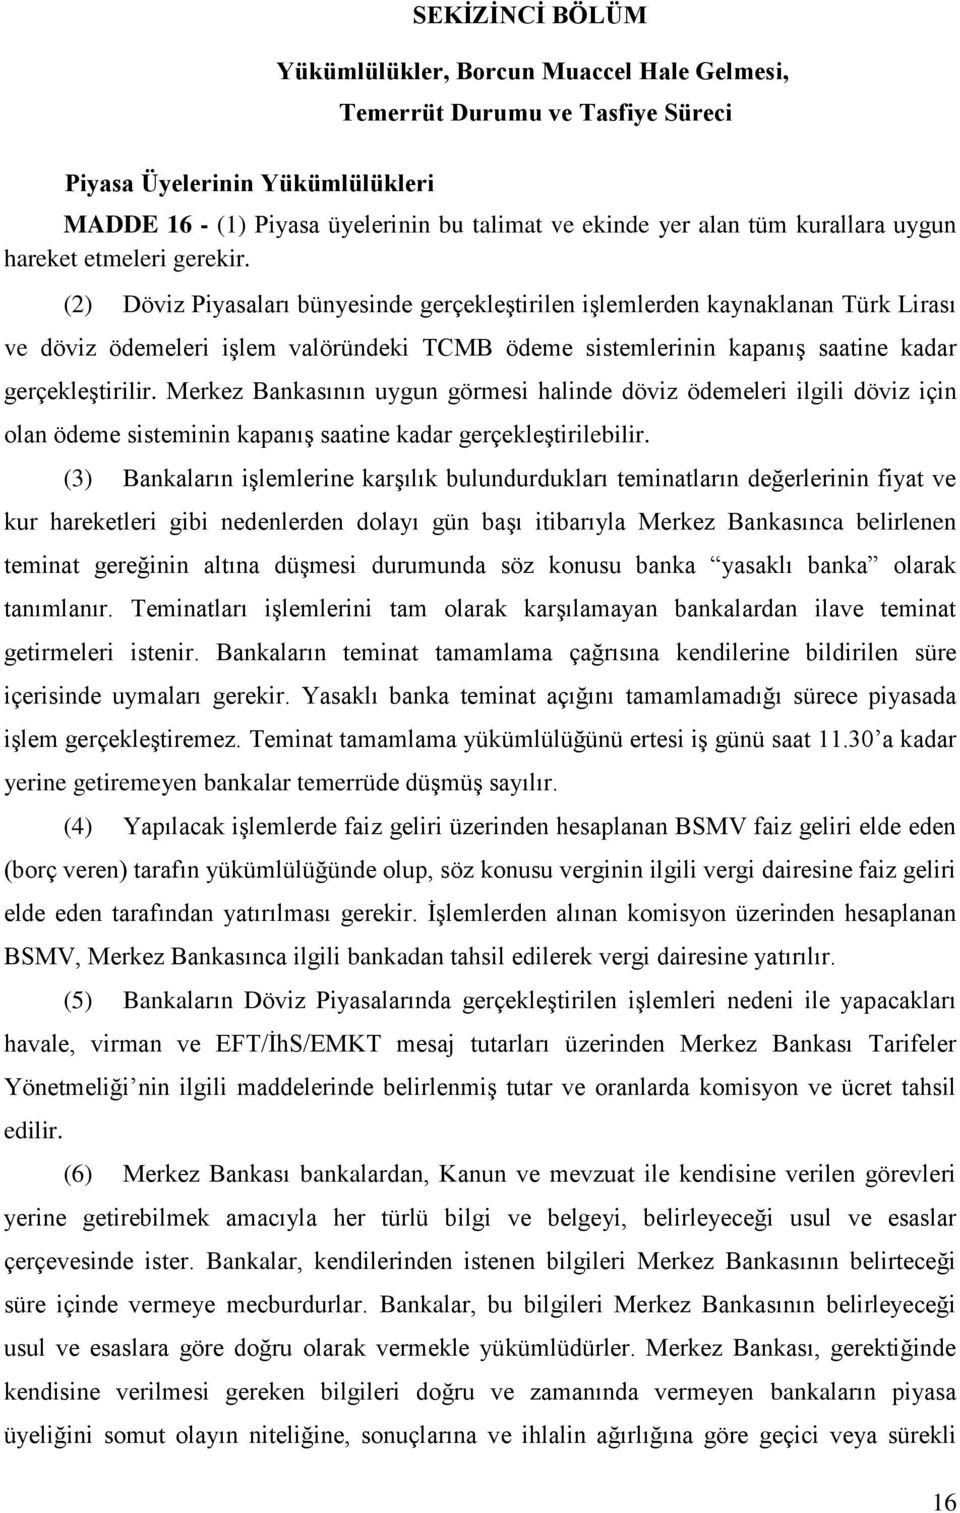 (2) Döviz Piyasaları bünyesinde gerçekleştirilen işlemlerden kaynaklanan Türk Lirası ve döviz ödemeleri işlem valöründeki TCMB ödeme sistemlerinin kapanış saatine kadar gerçekleştirilir.